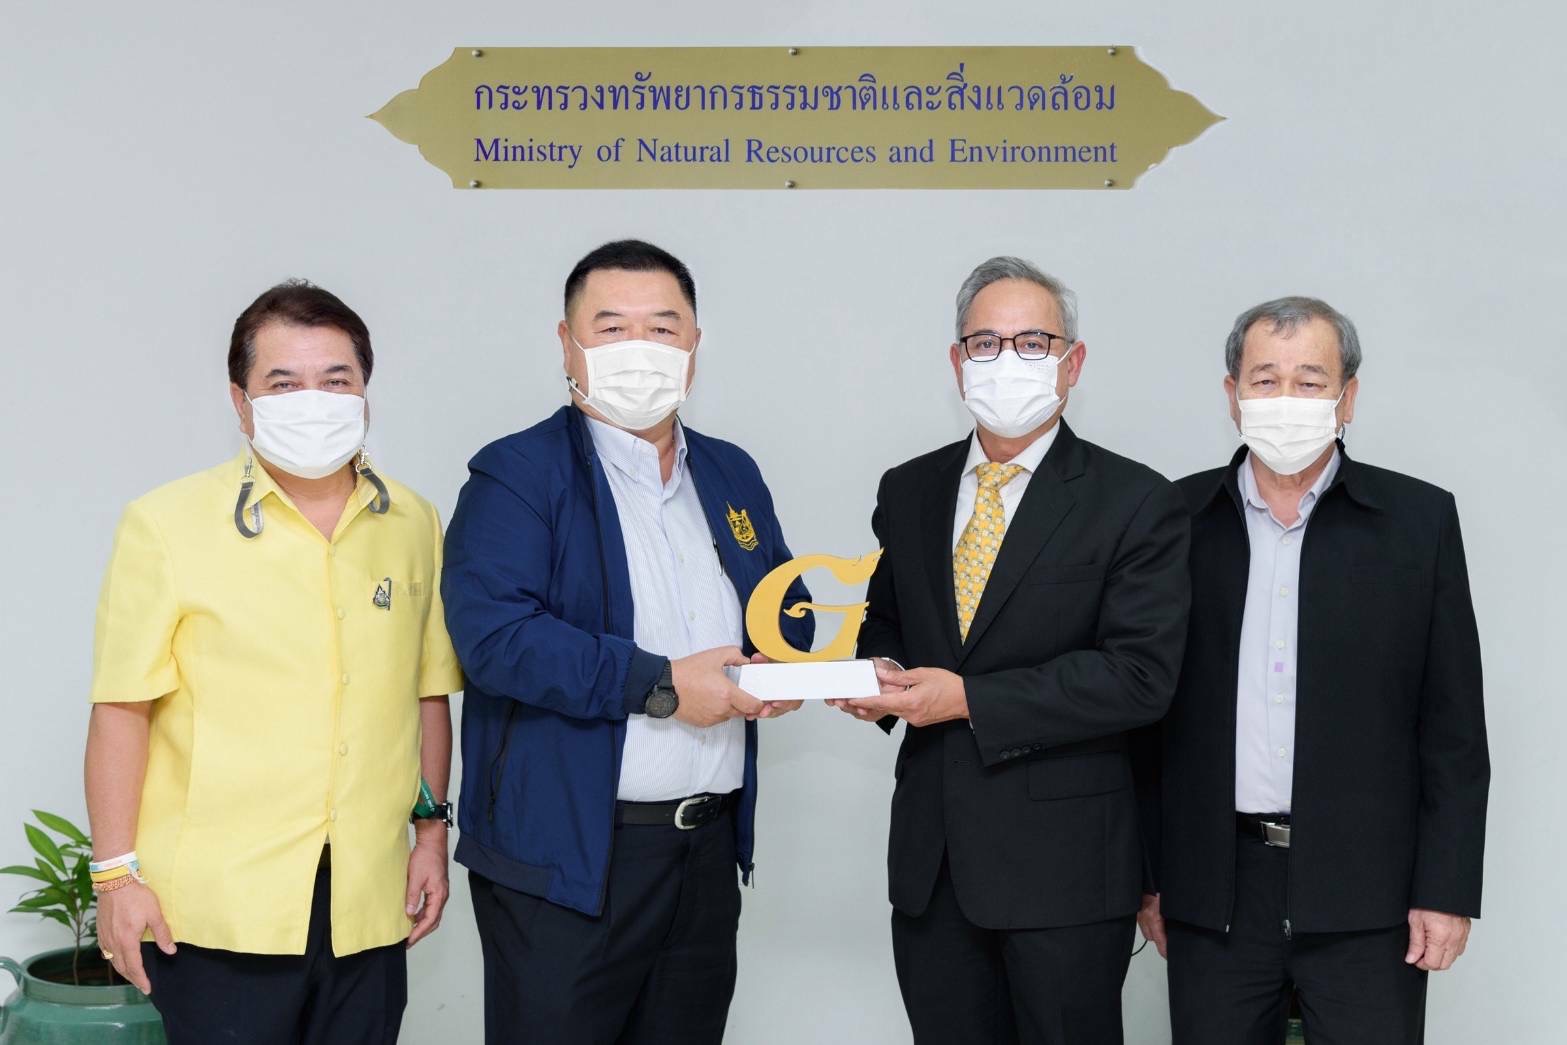 กรุงศรียืนหนึ่ง-แบงก์แรกในไทย คว้ารางวัลสำนักงานสีเขียวระดับดีเยี่ยม (Gold) จากกระทรวงทรัพยากรธรรมชาติและสิ่งแวดล้อม